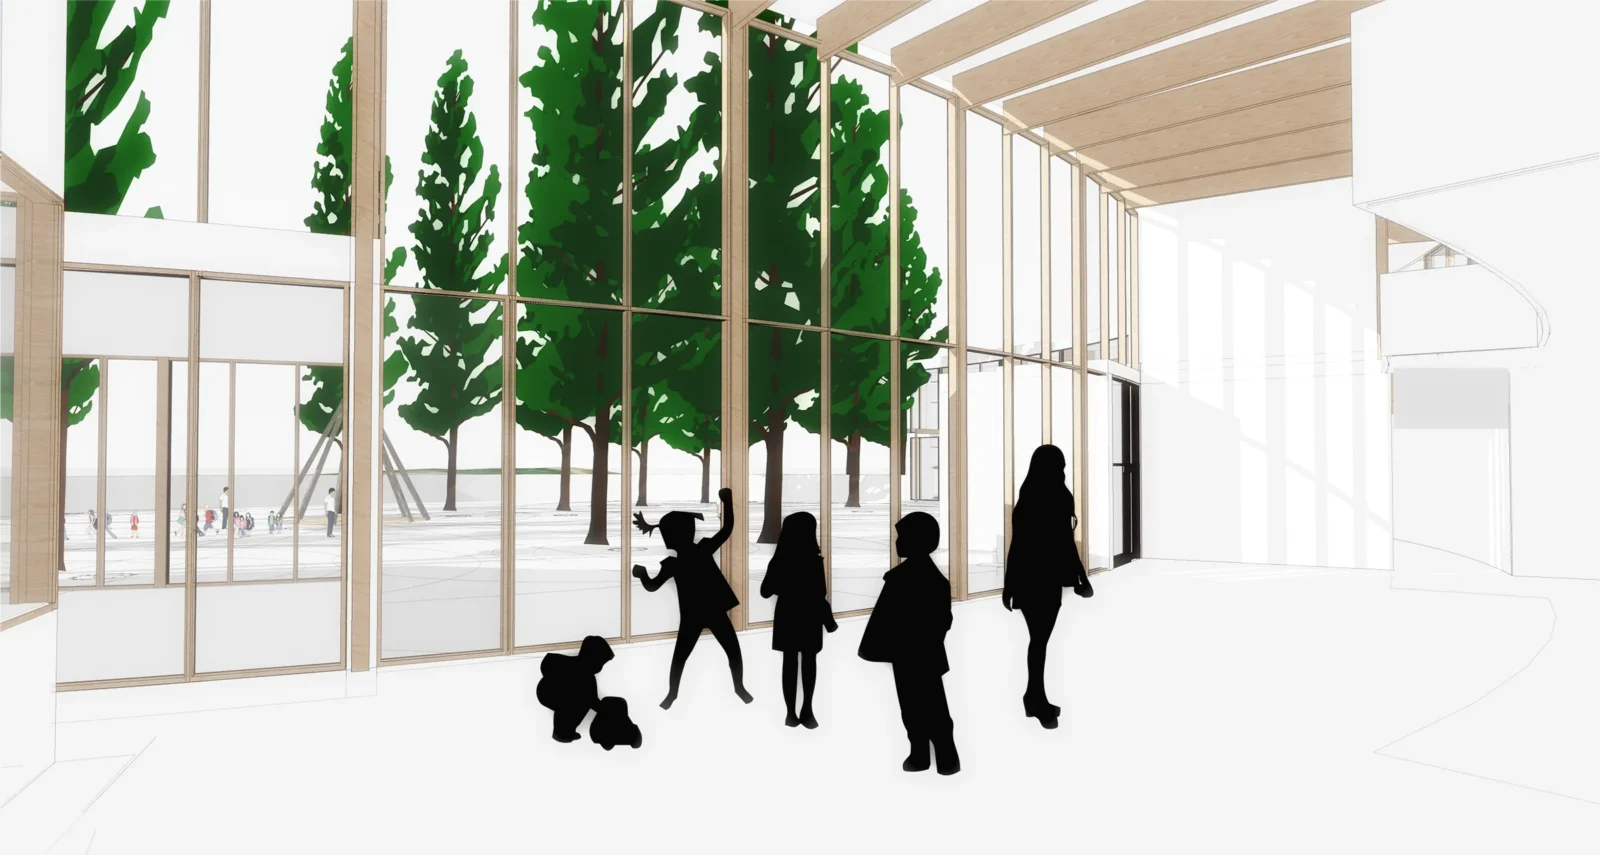 Rendu architectural d'une vue intérieure de l'école primaire Lac Barrière avec silhouettes